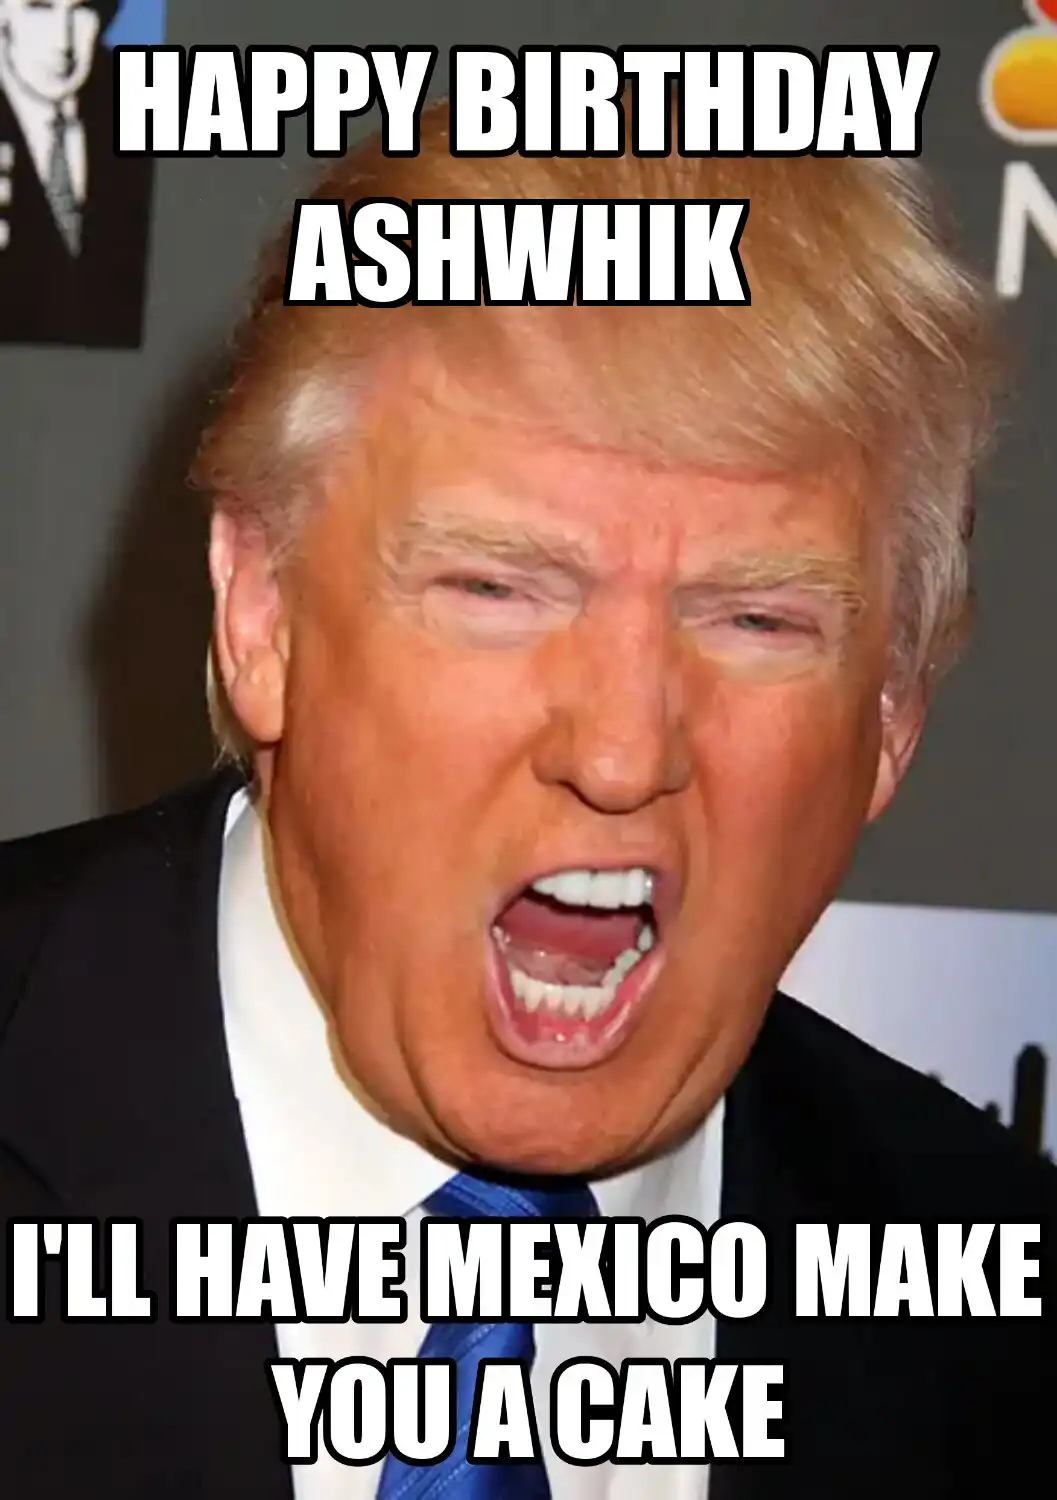 Happy Birthday Ashwhik Mexico Make You A Cake Meme